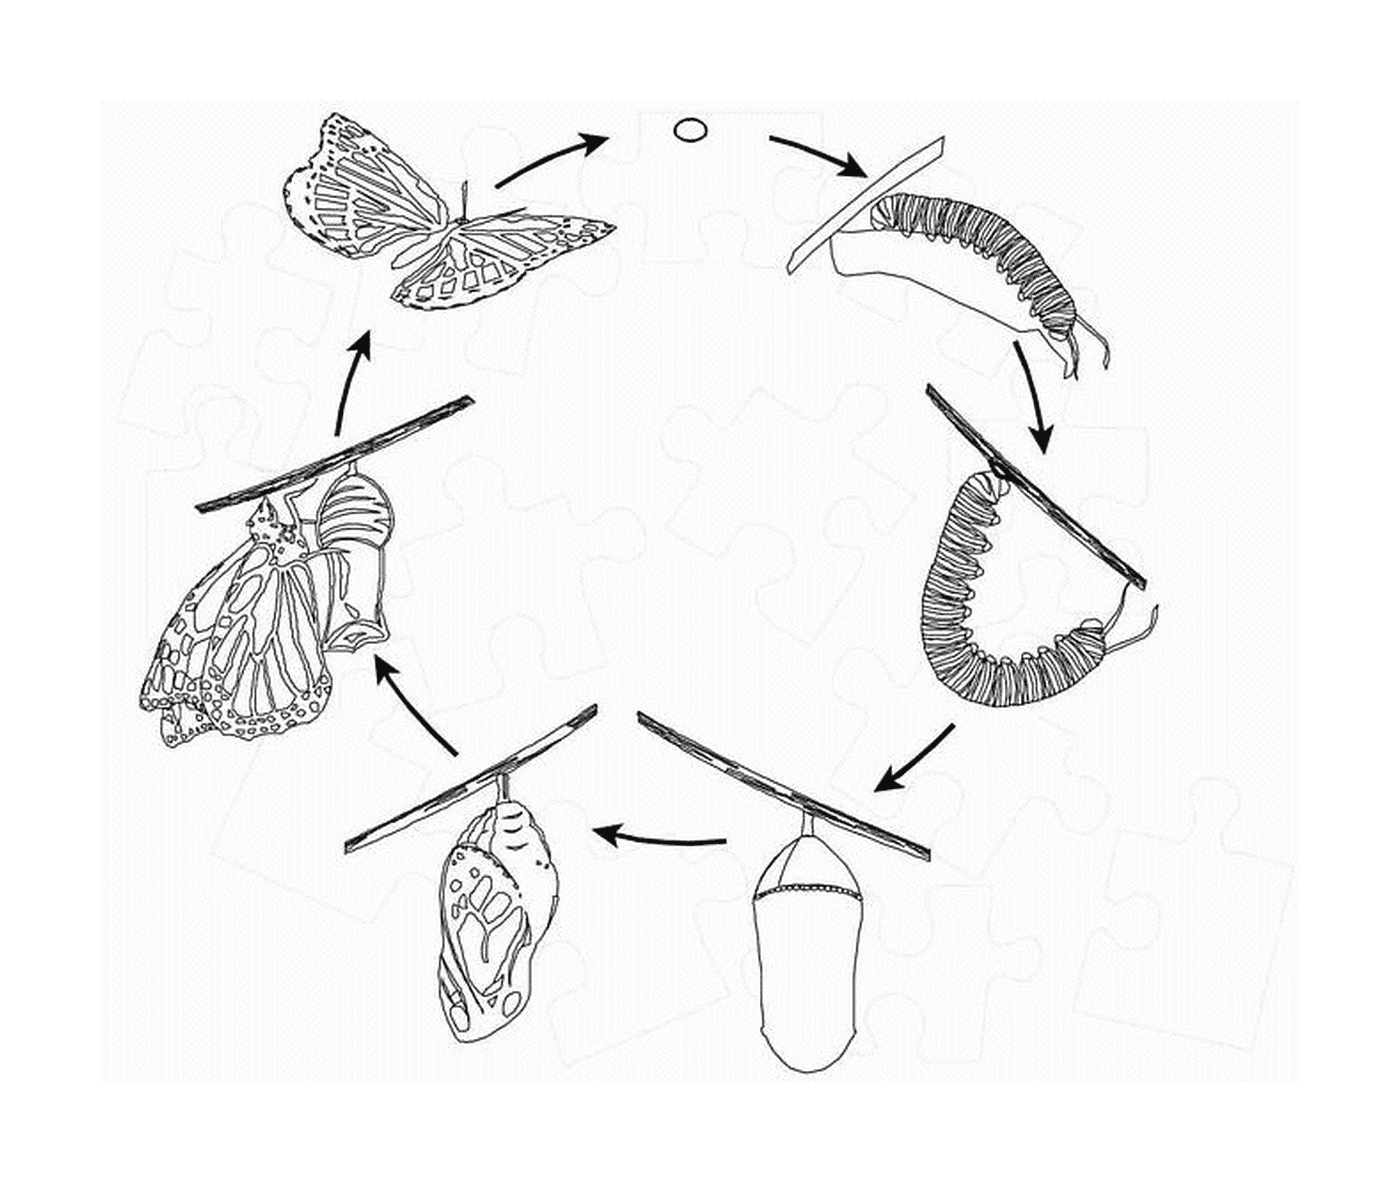  ciclo de vida de la mariposa 